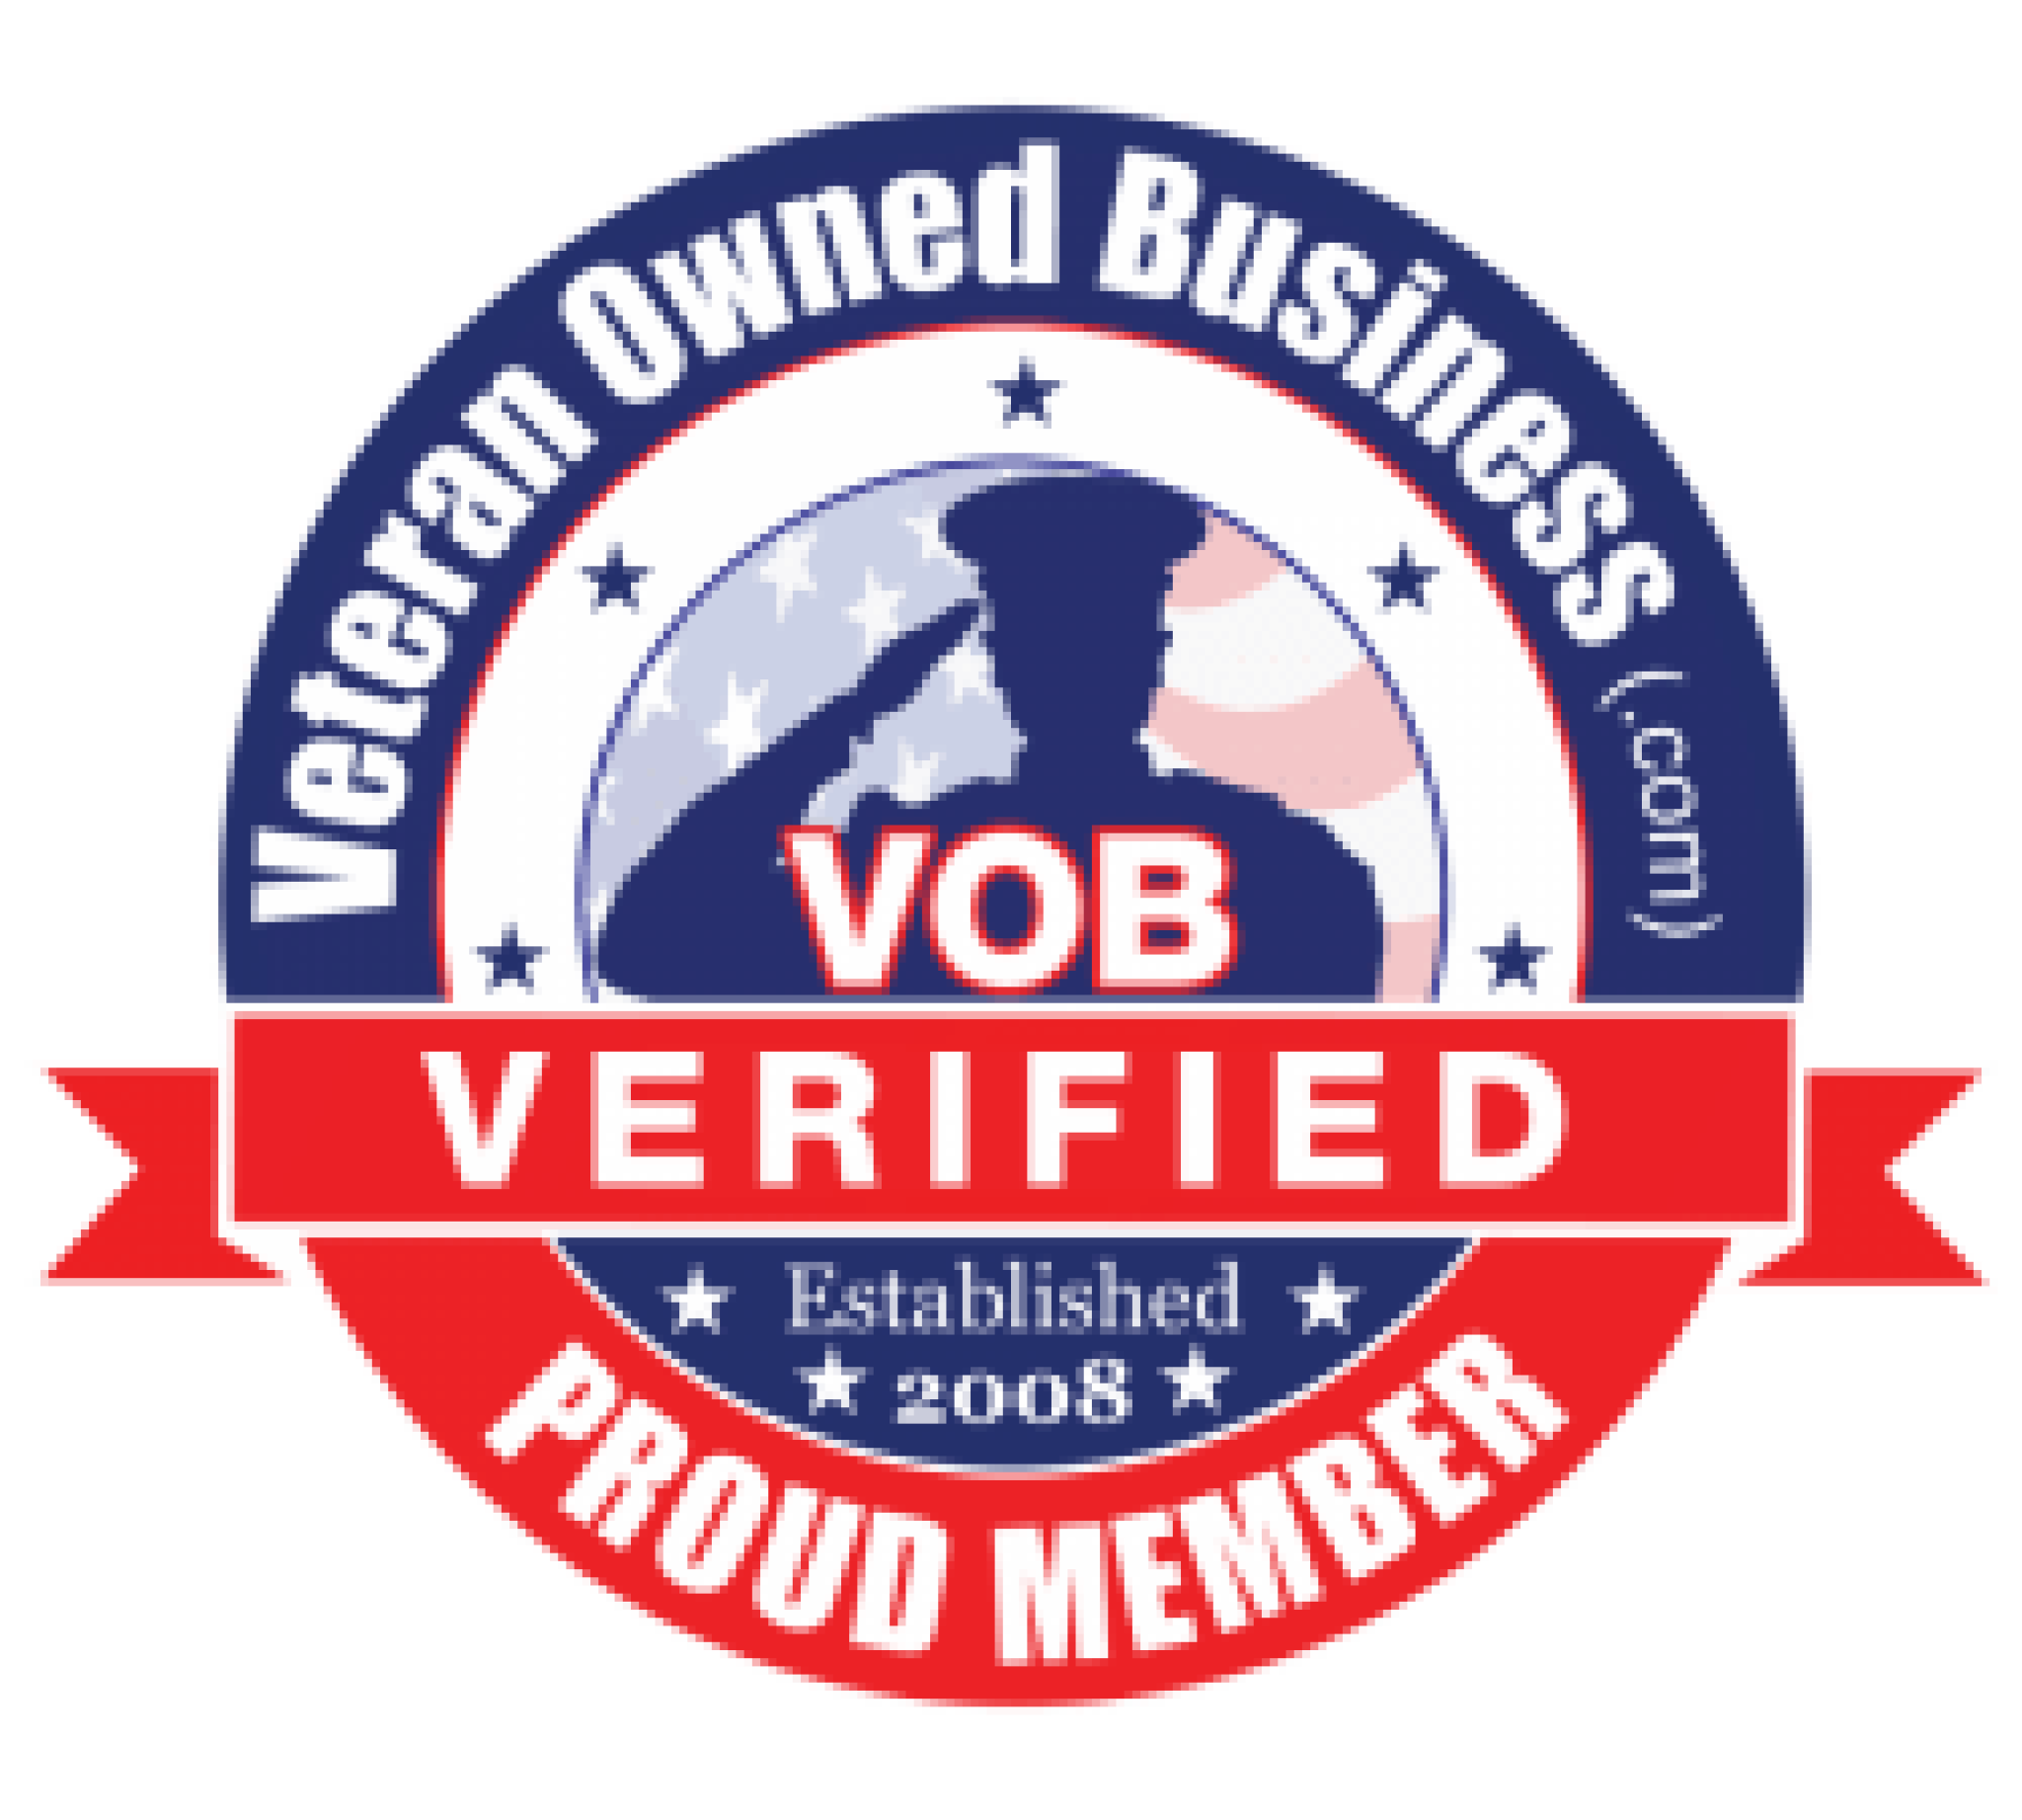 Veteran_Owned_Business_Verified_Proud_Member_Badge_1000x900_cir-e1614040841459.png